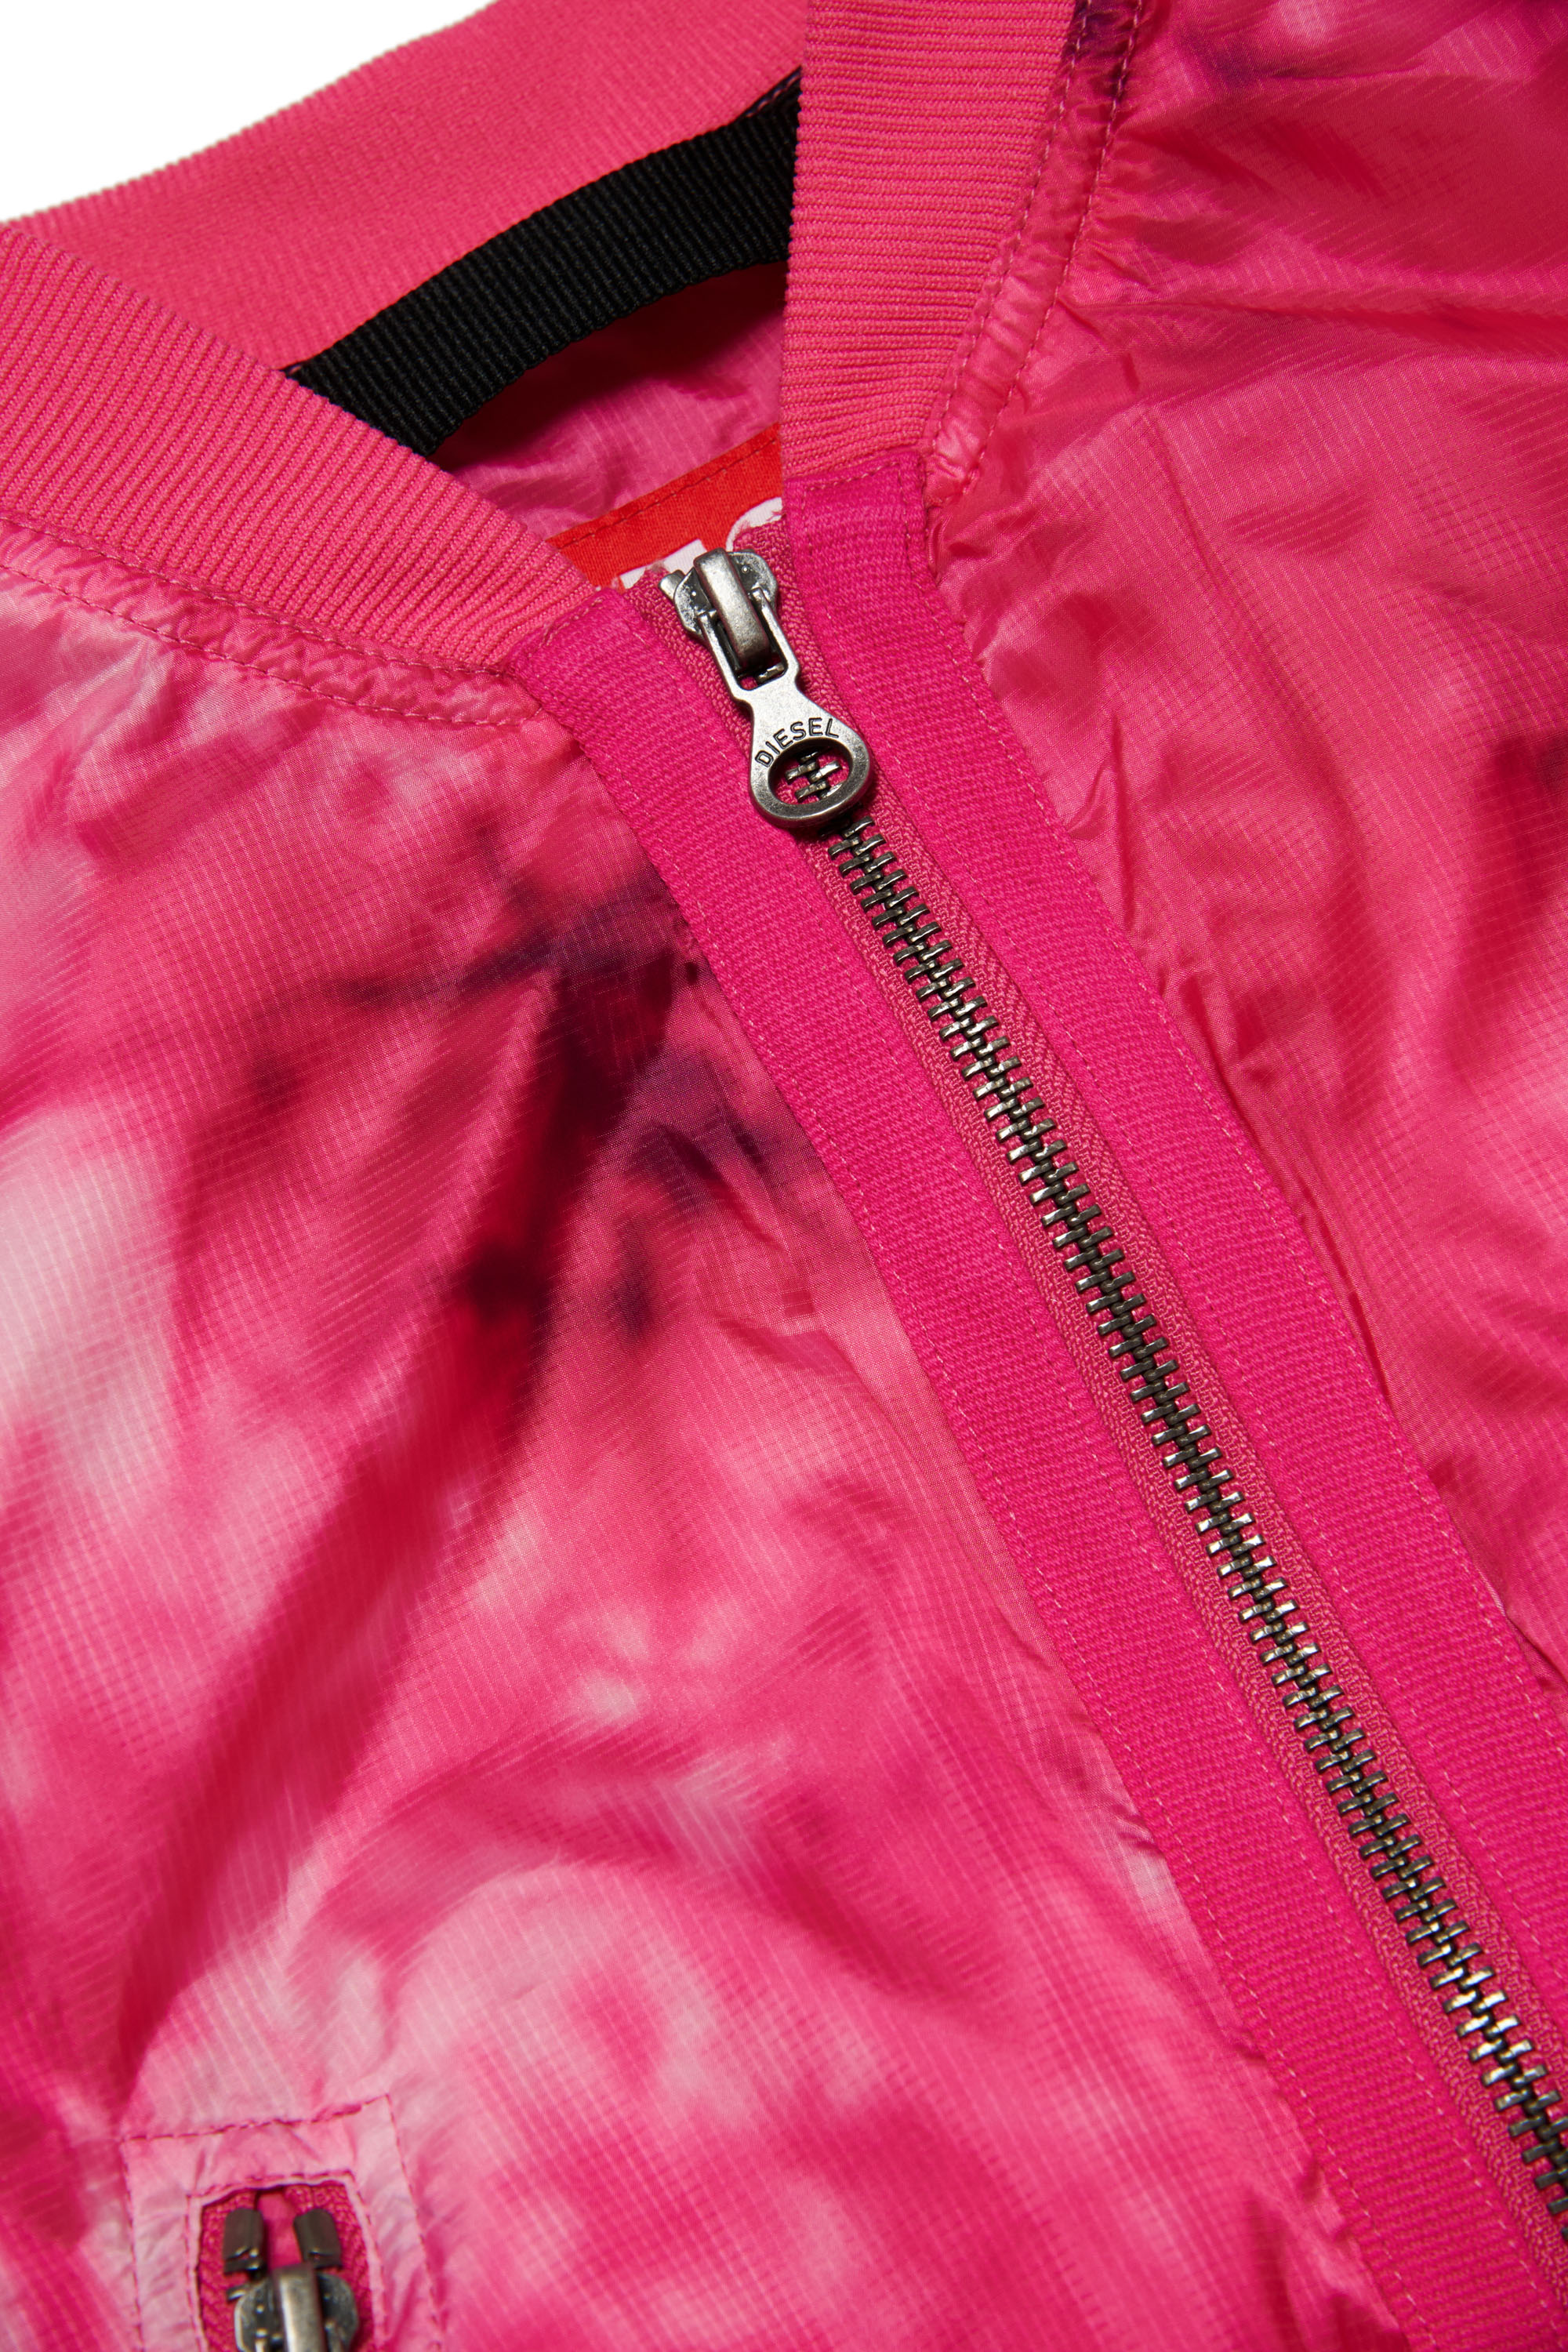 Diesel - JOAK, Woman Bomber jacket in tie-dye ripstop in Pink - Image 3